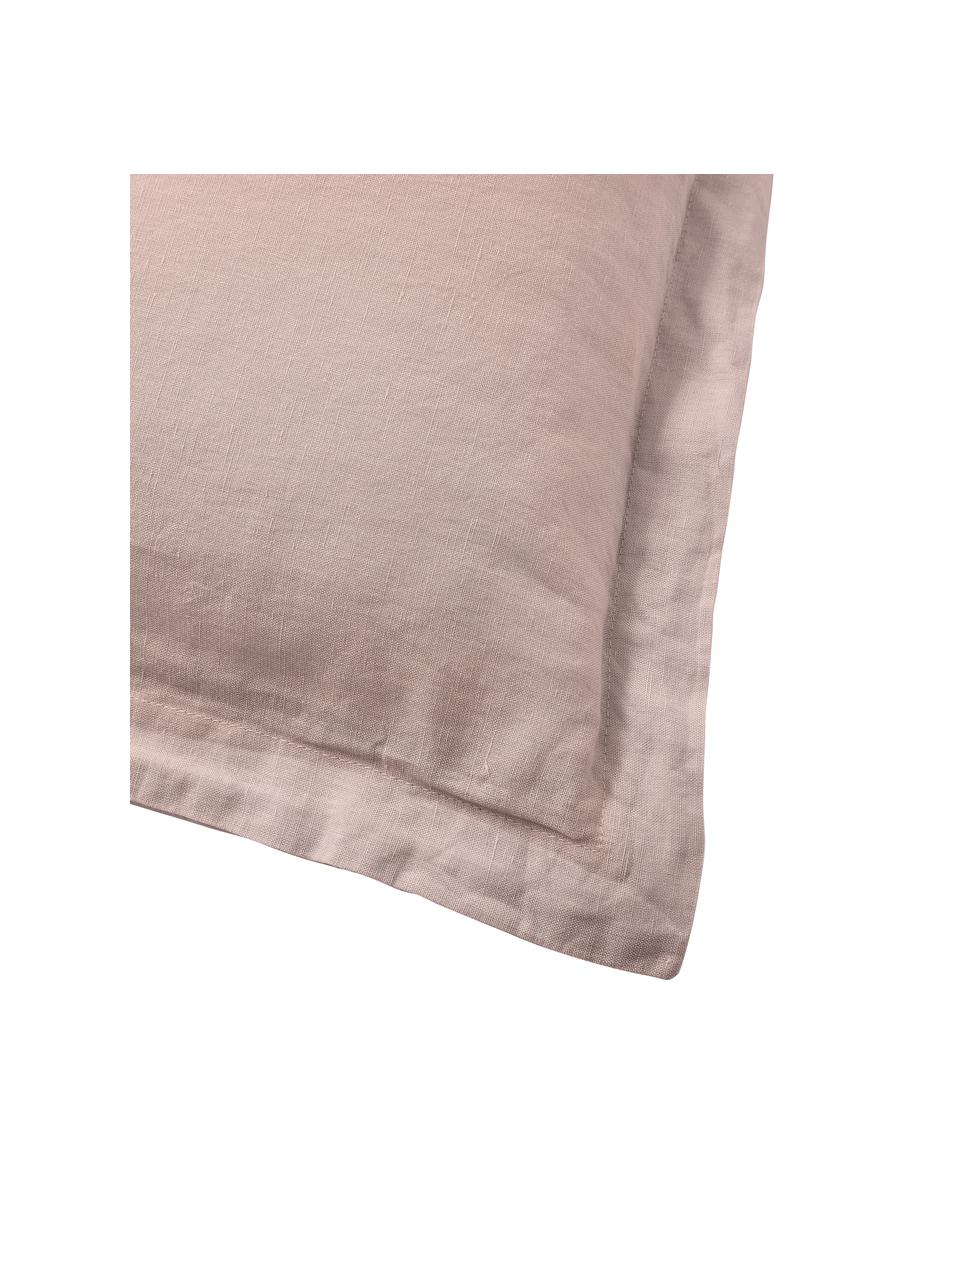 Poszewka na poduszkę z lnu efektem sprania Nature, 2 szt., Brudny różowy, S 40 x D 80 cm